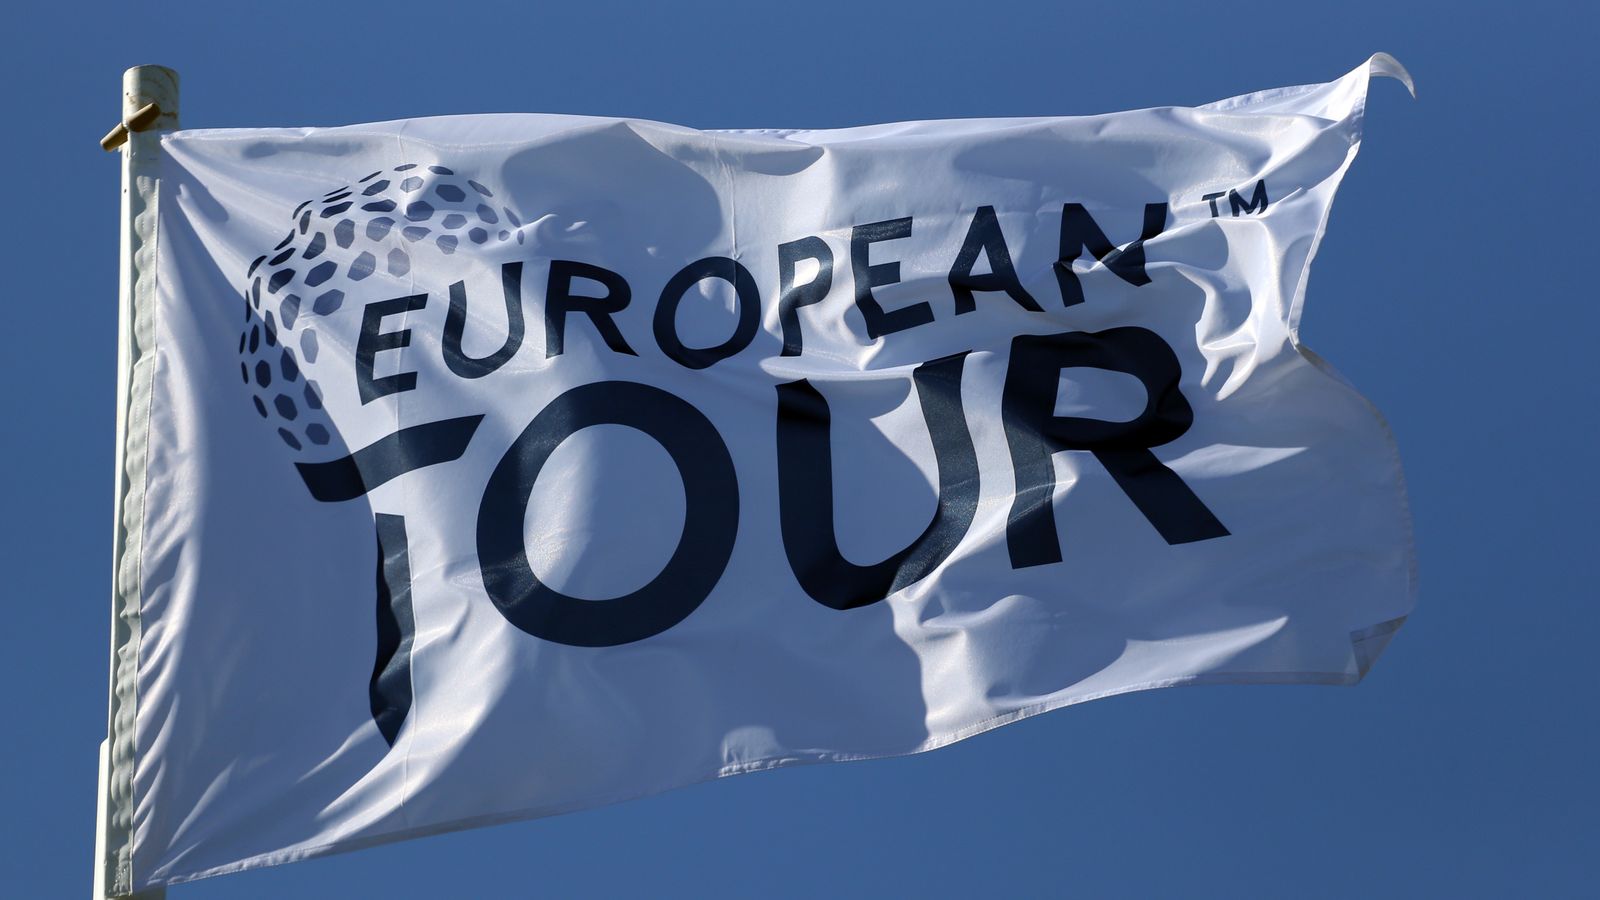 who sponsors european golf tour